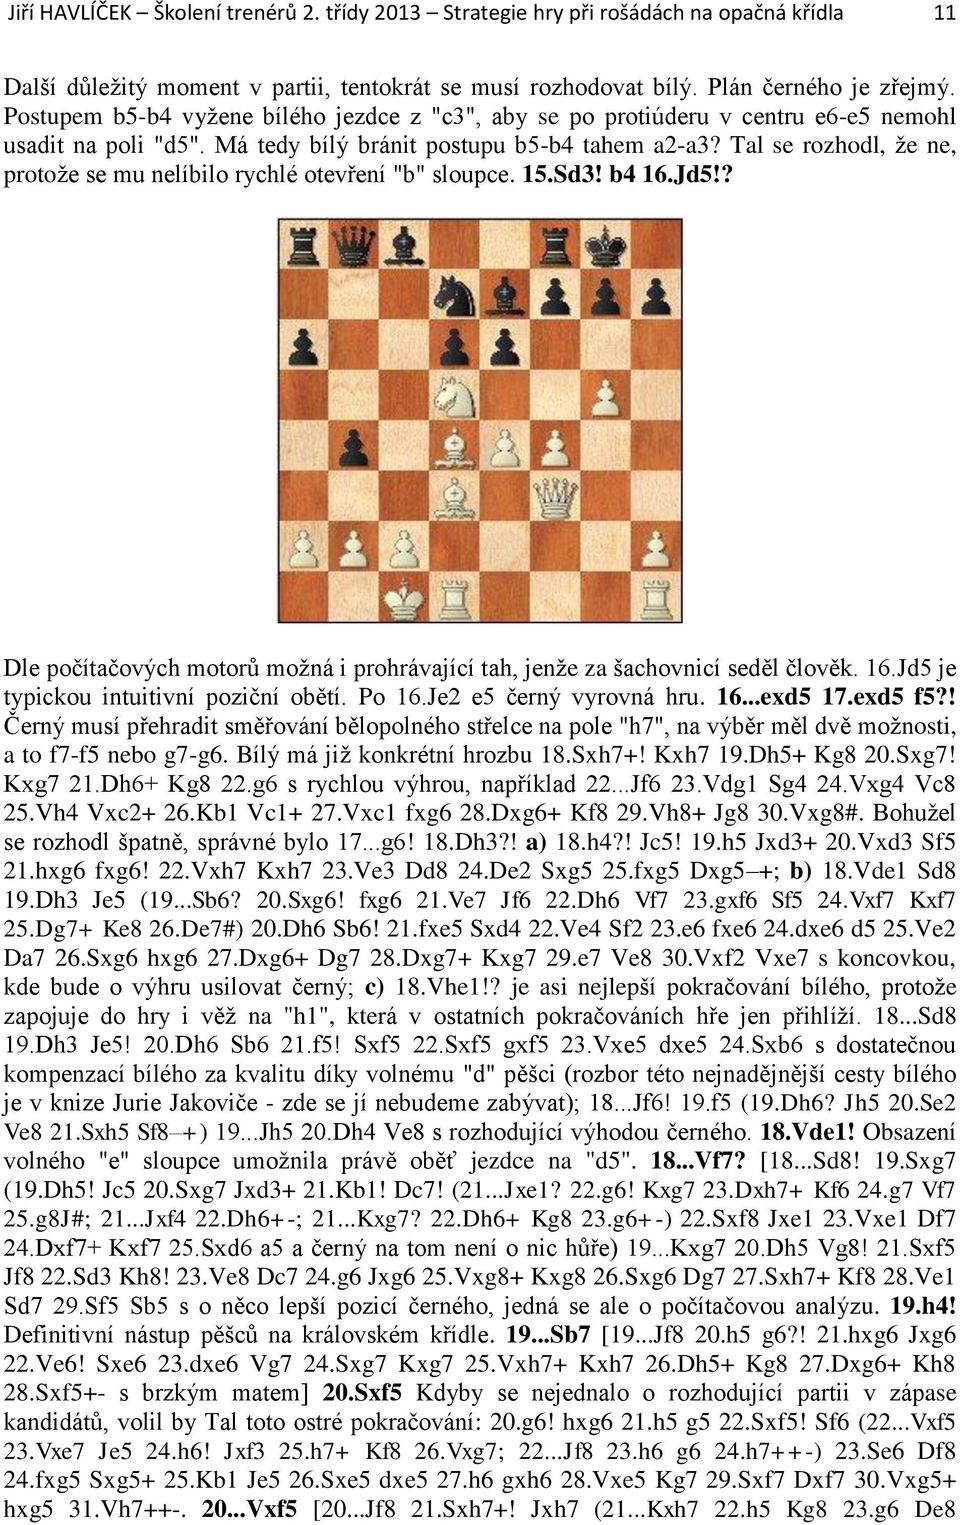 Tal se rozhodl, že ne, protože se mu nelíbilo rychlé otevření "b" sloupce. 15.Sd3! b4 16.Jd5!? Dle počítačových motorů možná i prohrávající tah, jenže za šachovnicí seděl člověk. 16.Jd5 je typickou intuitivní poziční obětí.